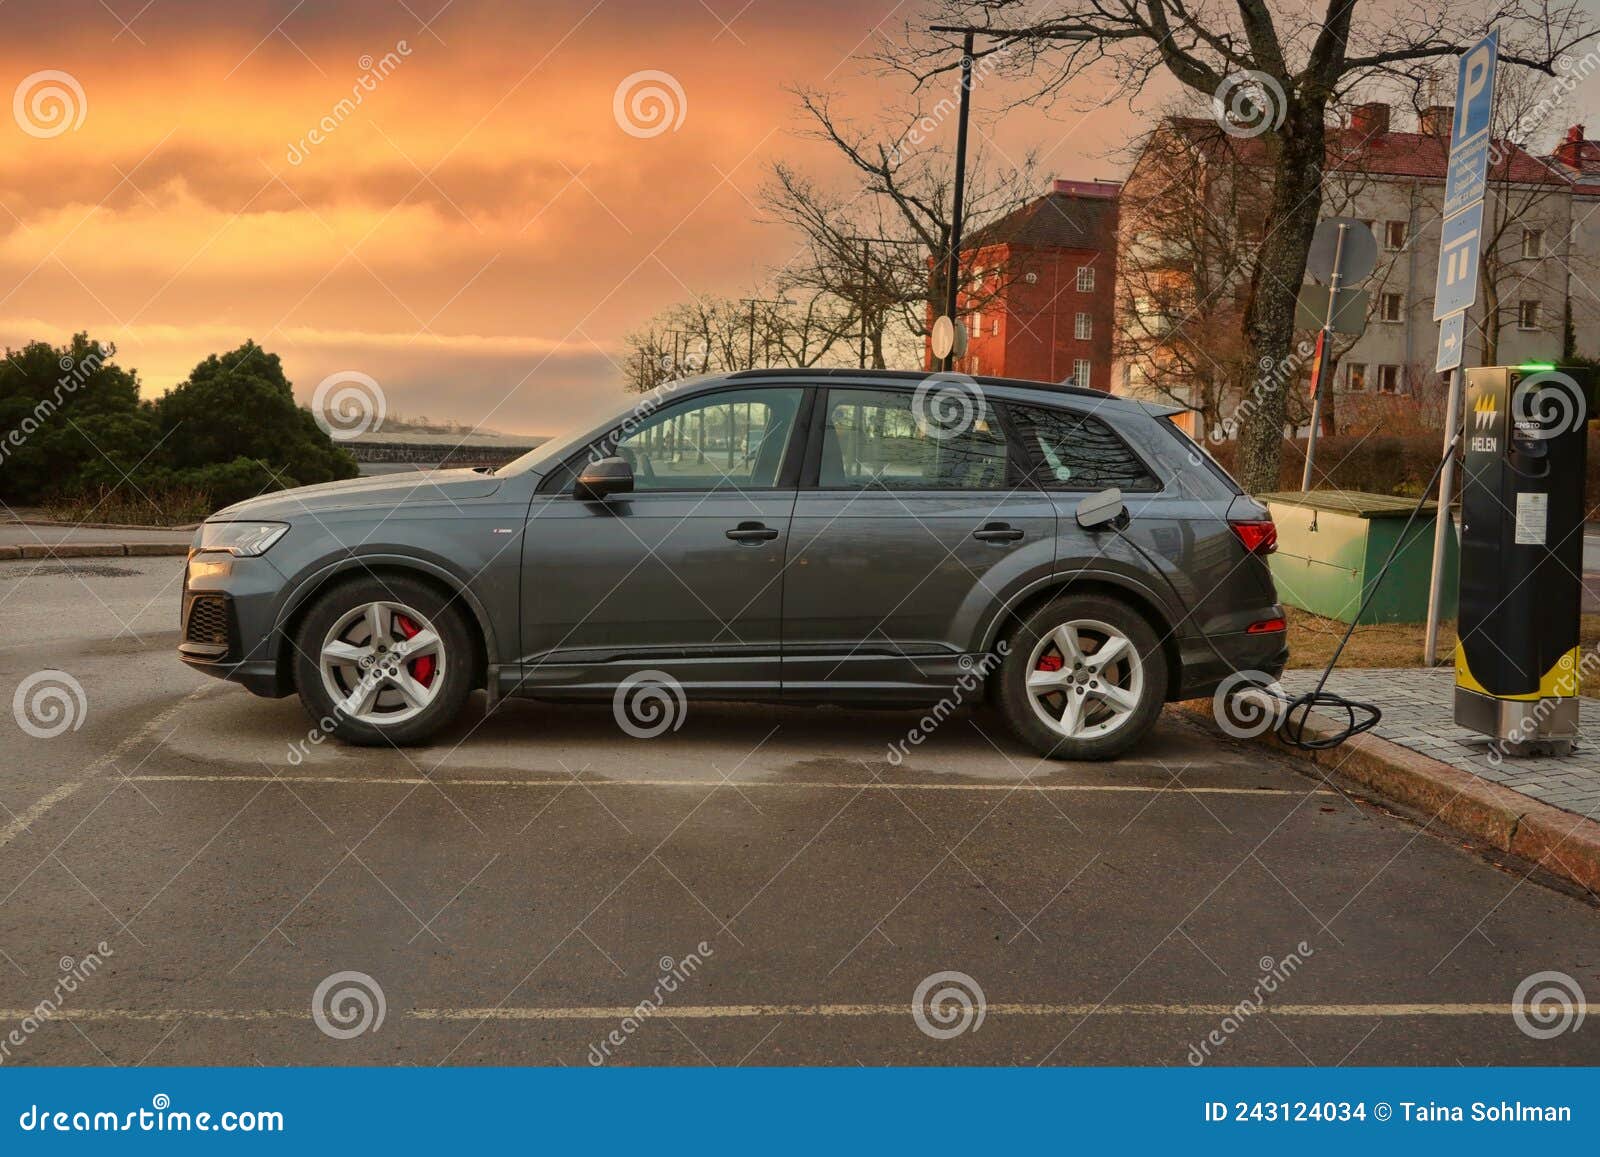 Batterie De Charge Audi Q7 Tfsi E Phev Image stock éditorial ...